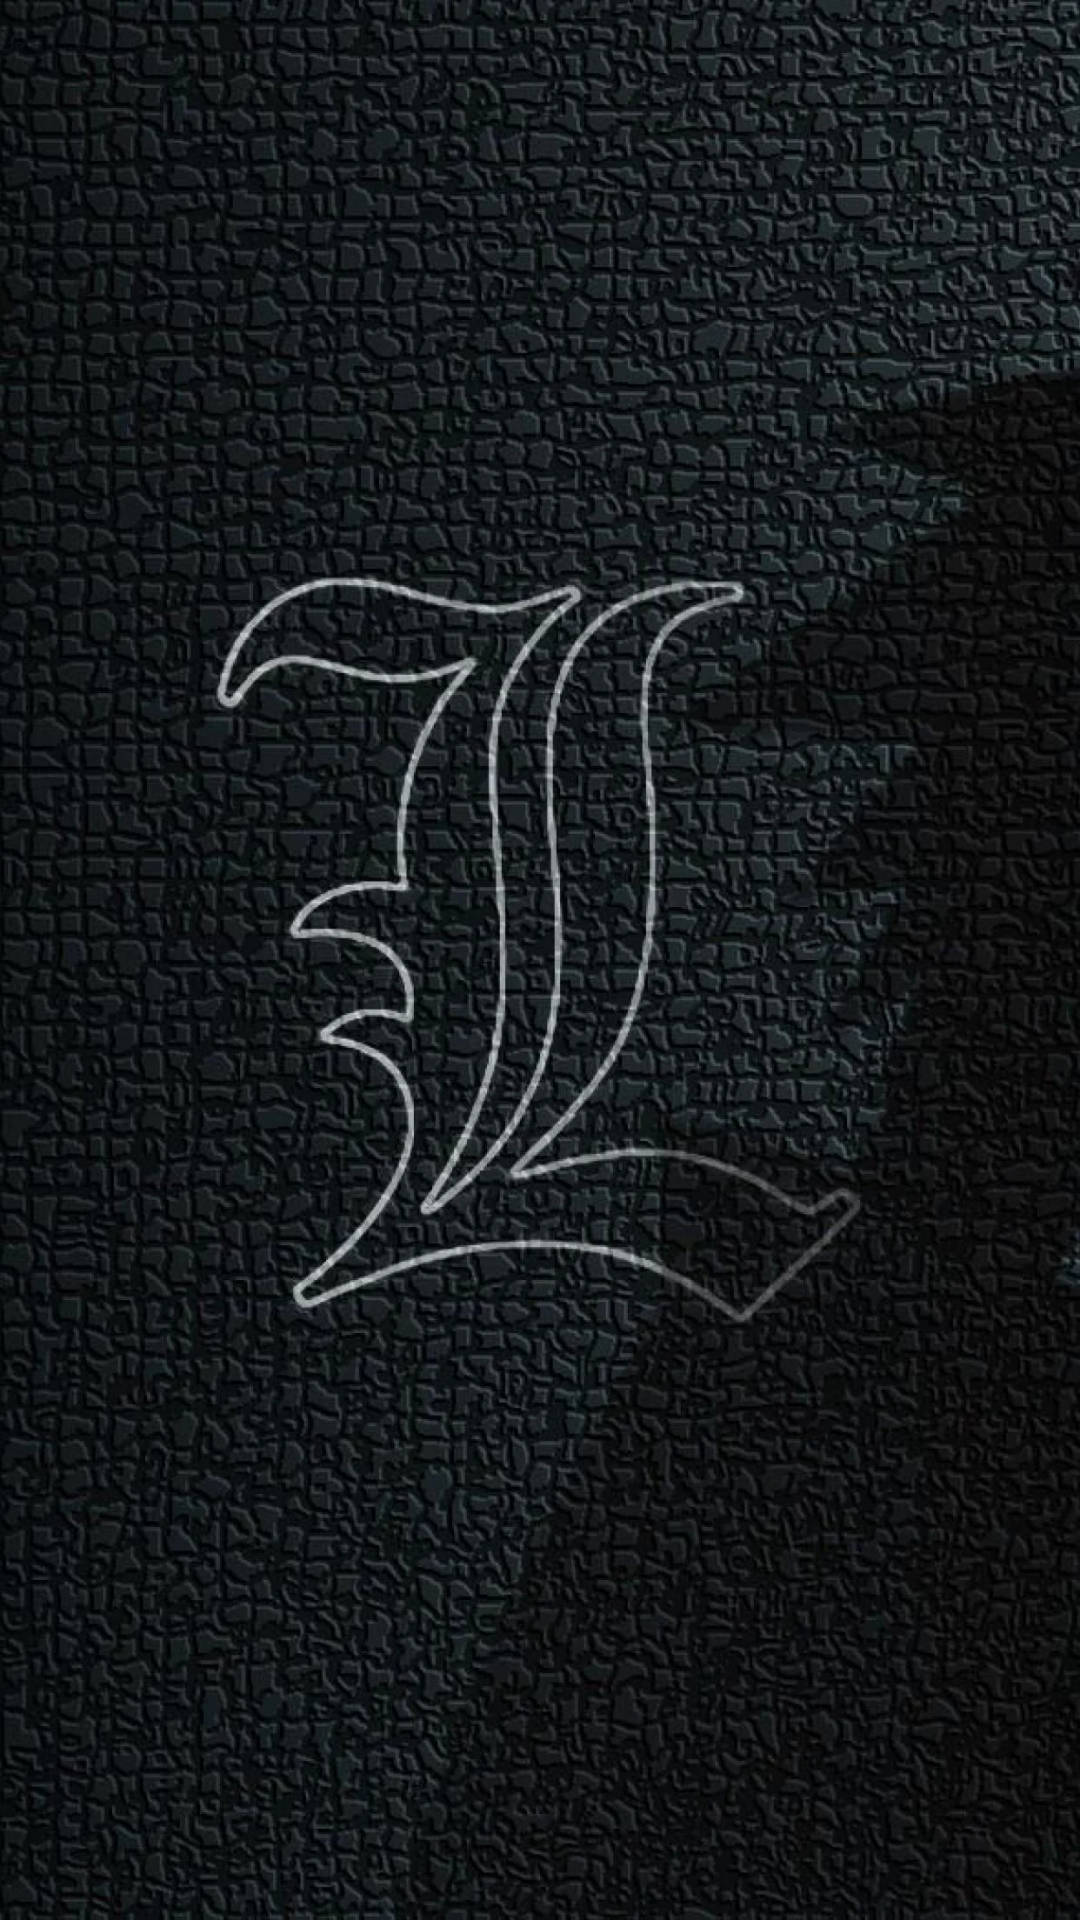 Lawliet's symbol på Death Note iPhone tapet. Wallpaper